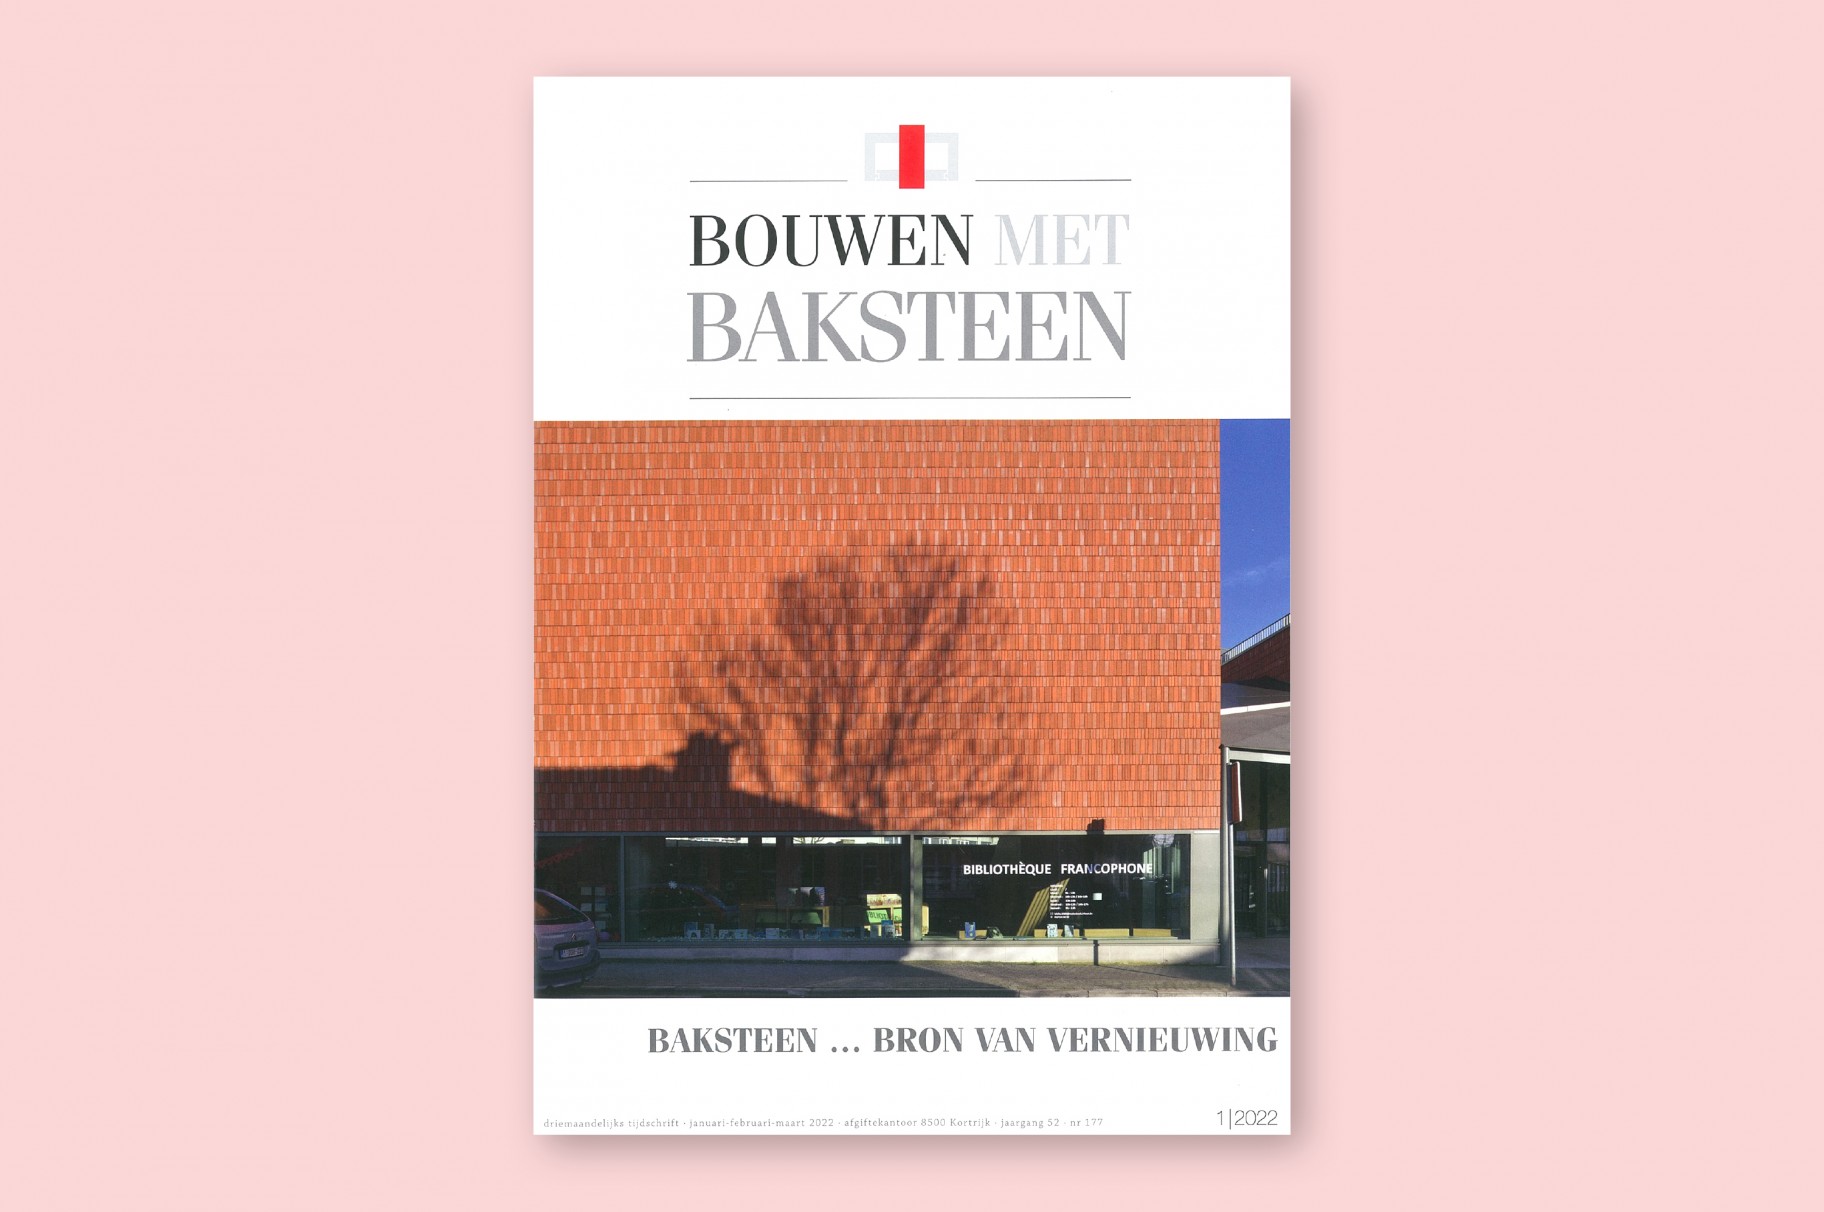 Bruges Meeting & Convention Centre in Bouwen met Baksteen